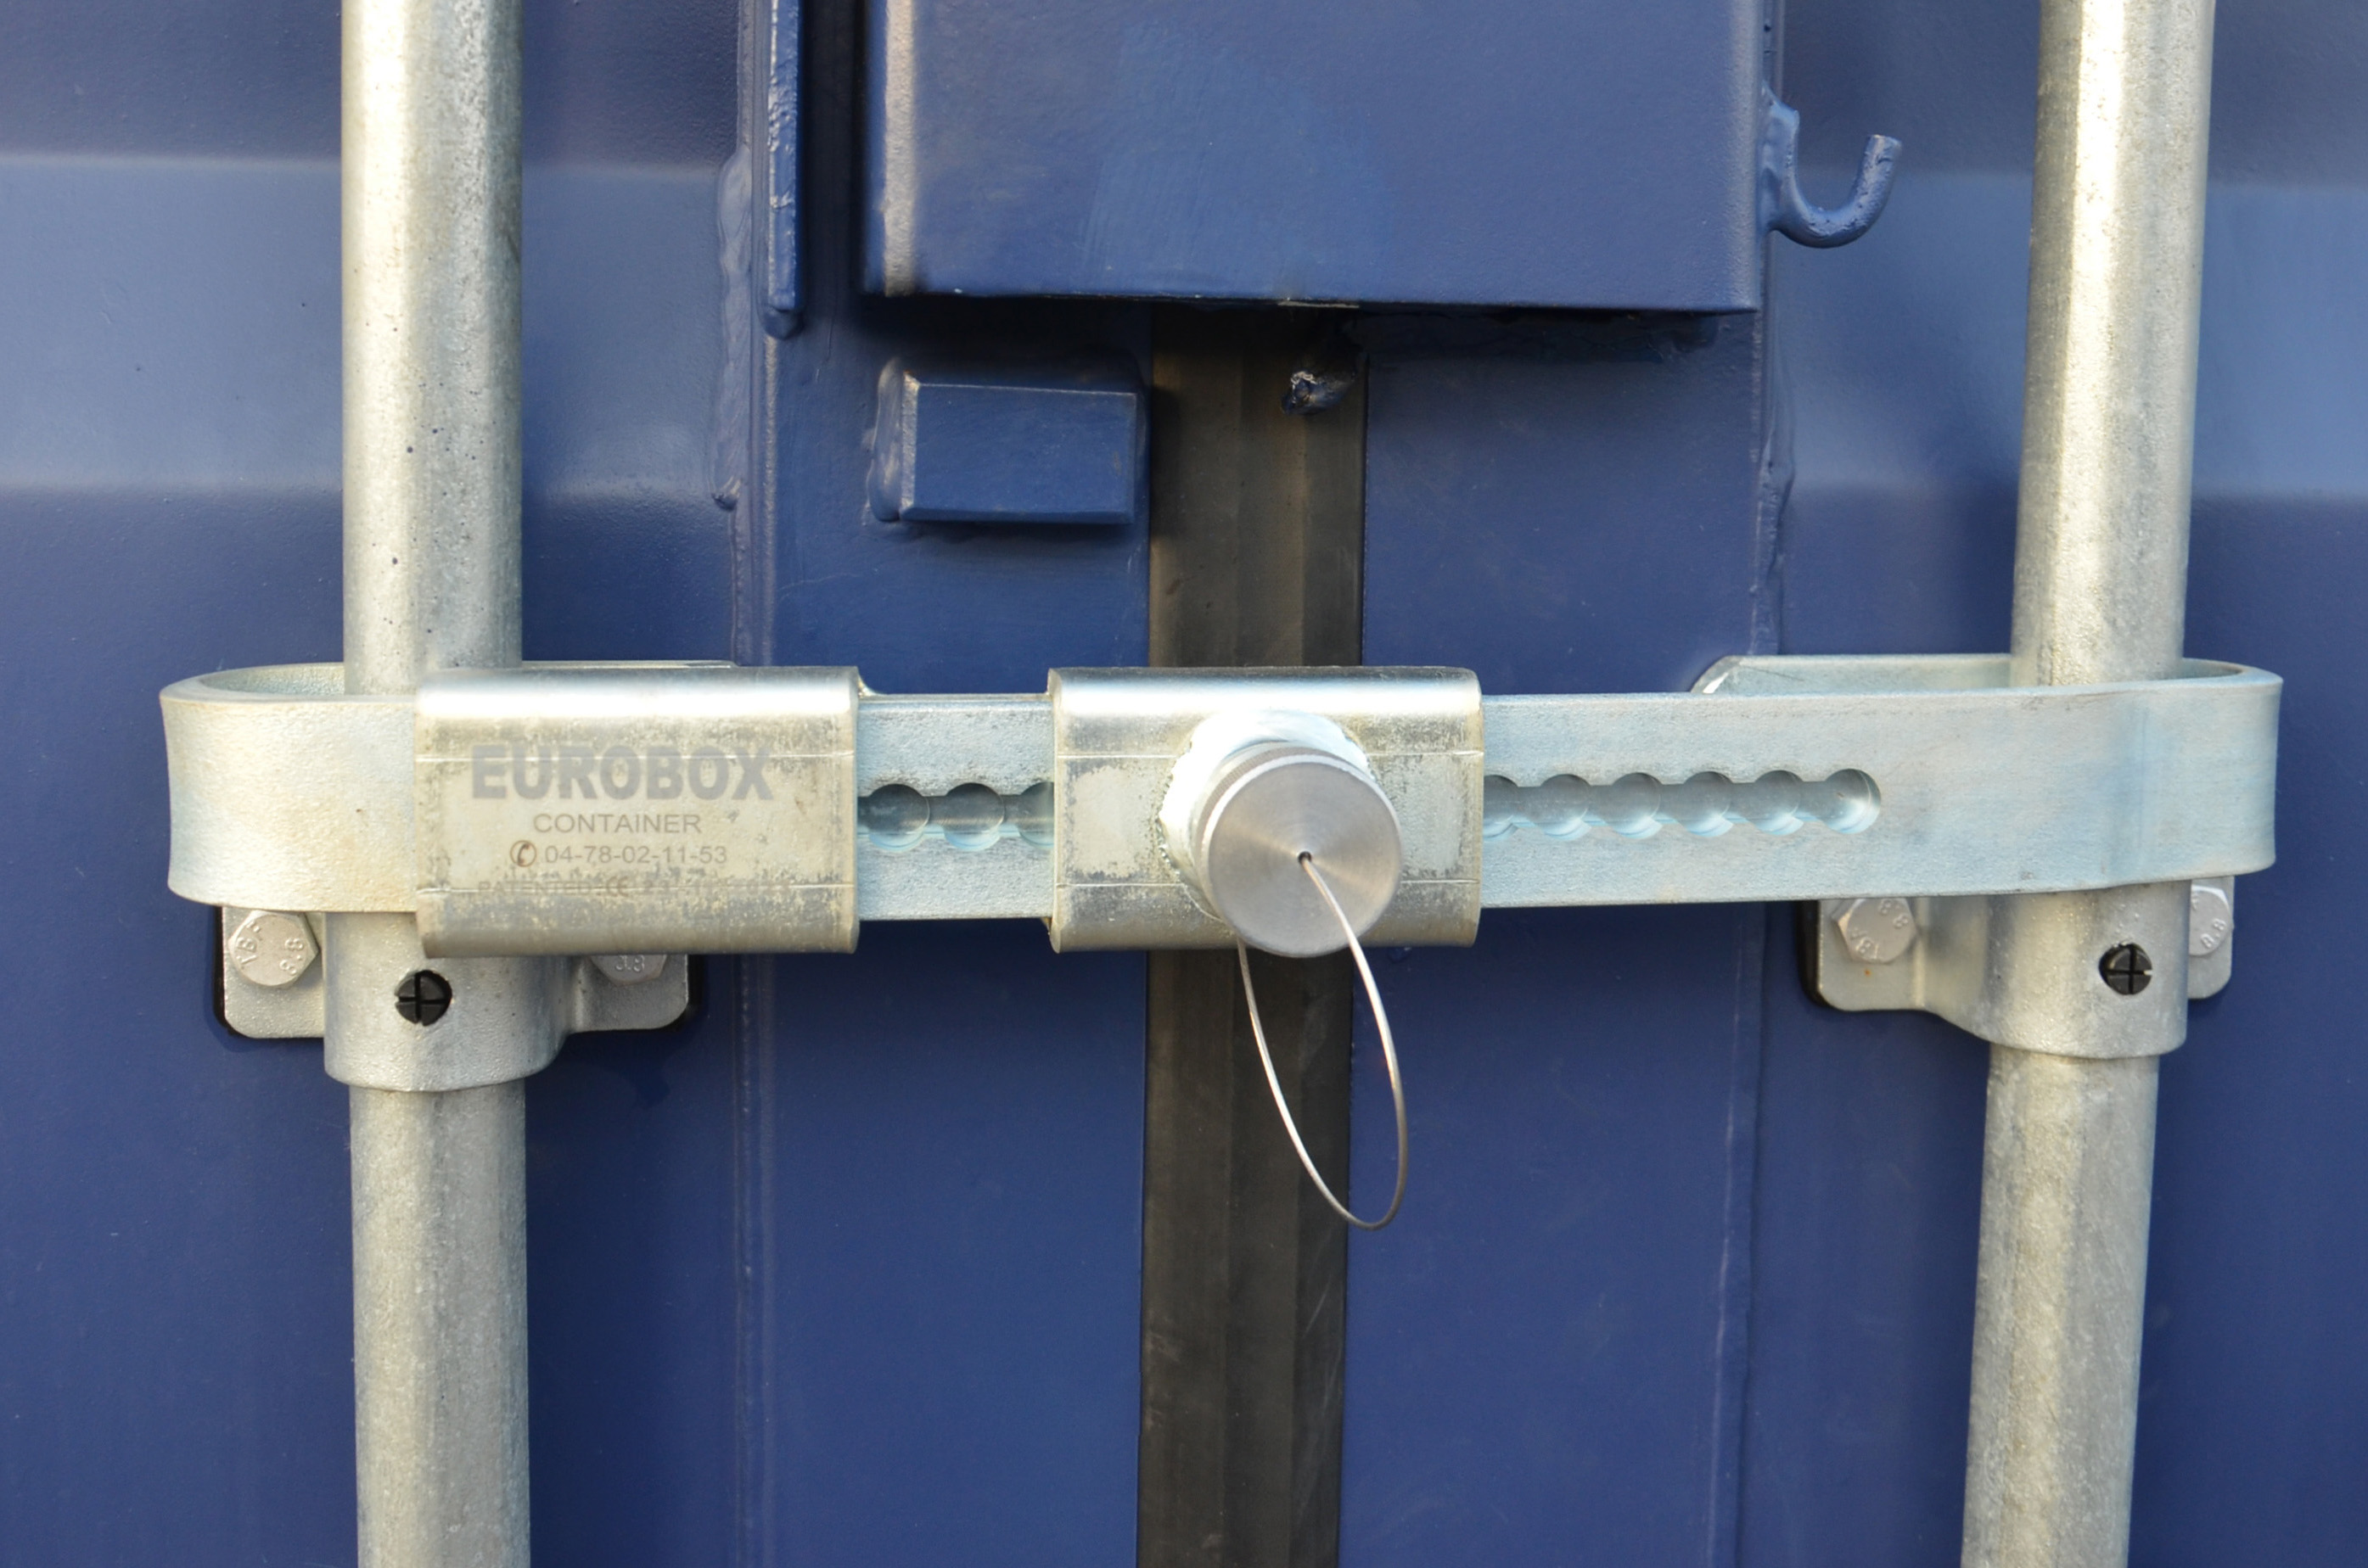 Système de verrouillage container, shutlock Eurobox gris acier galvanisé,